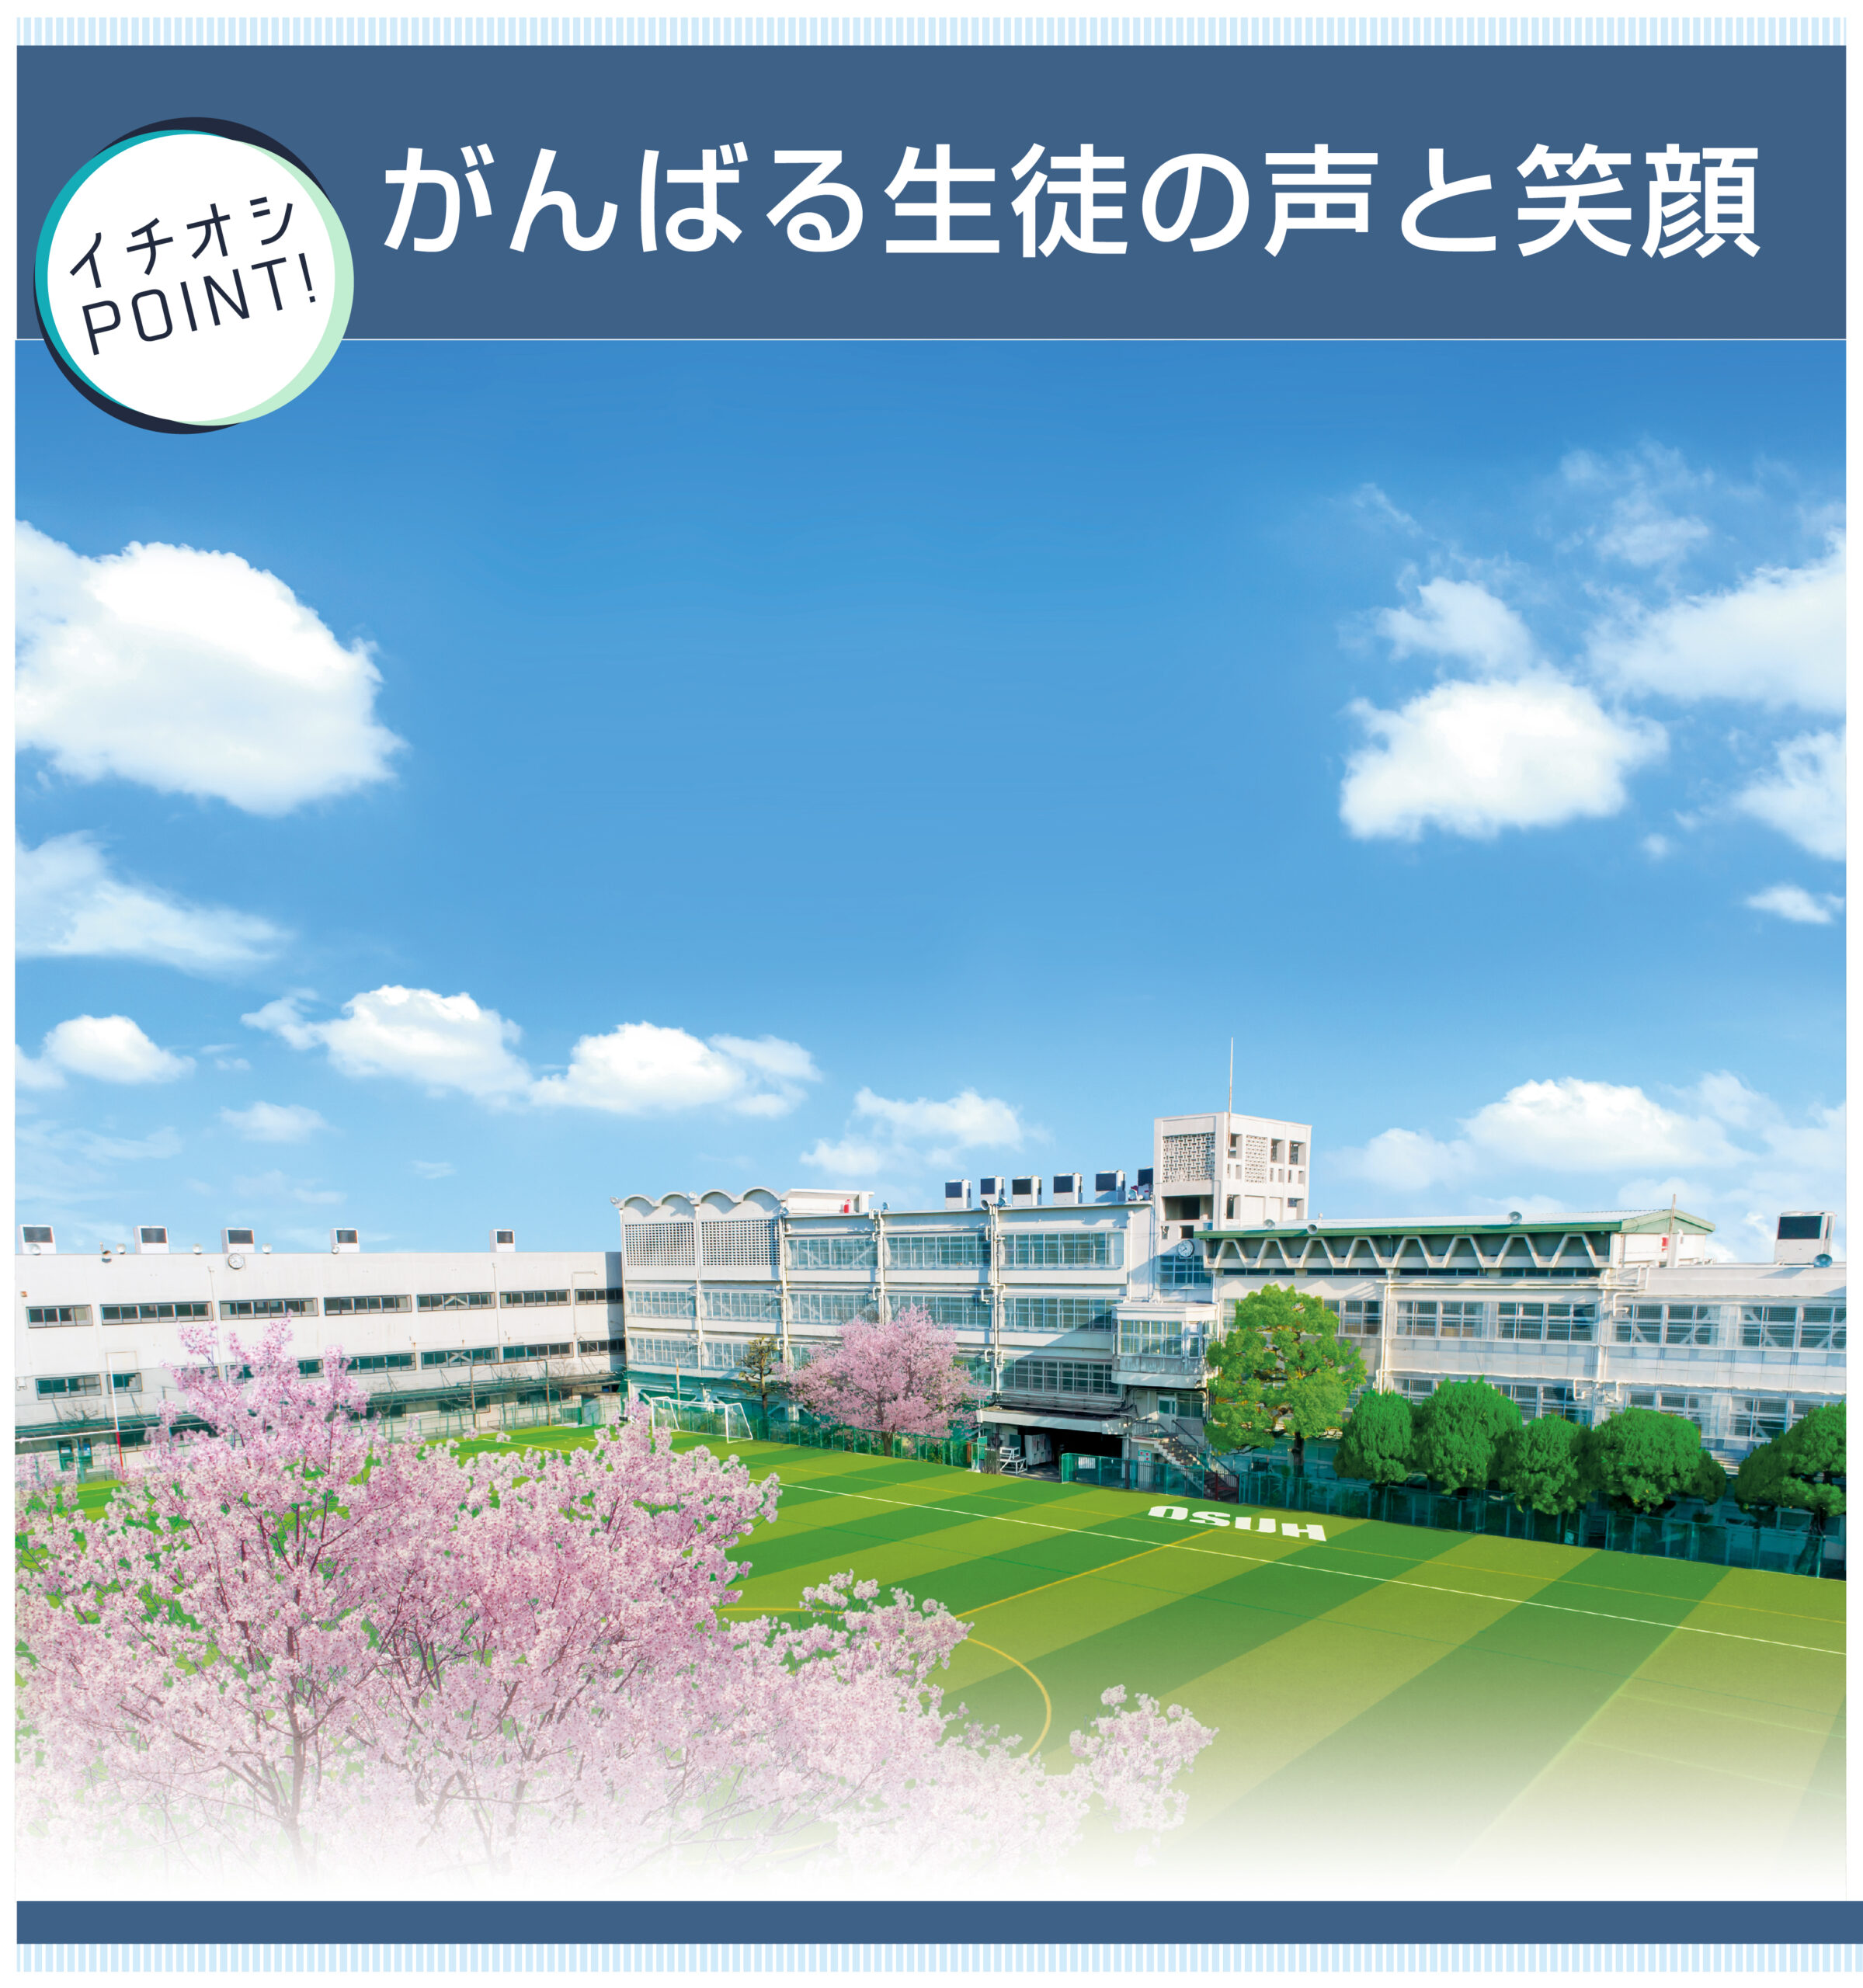 大阪産業大学附属高校 校舎画像